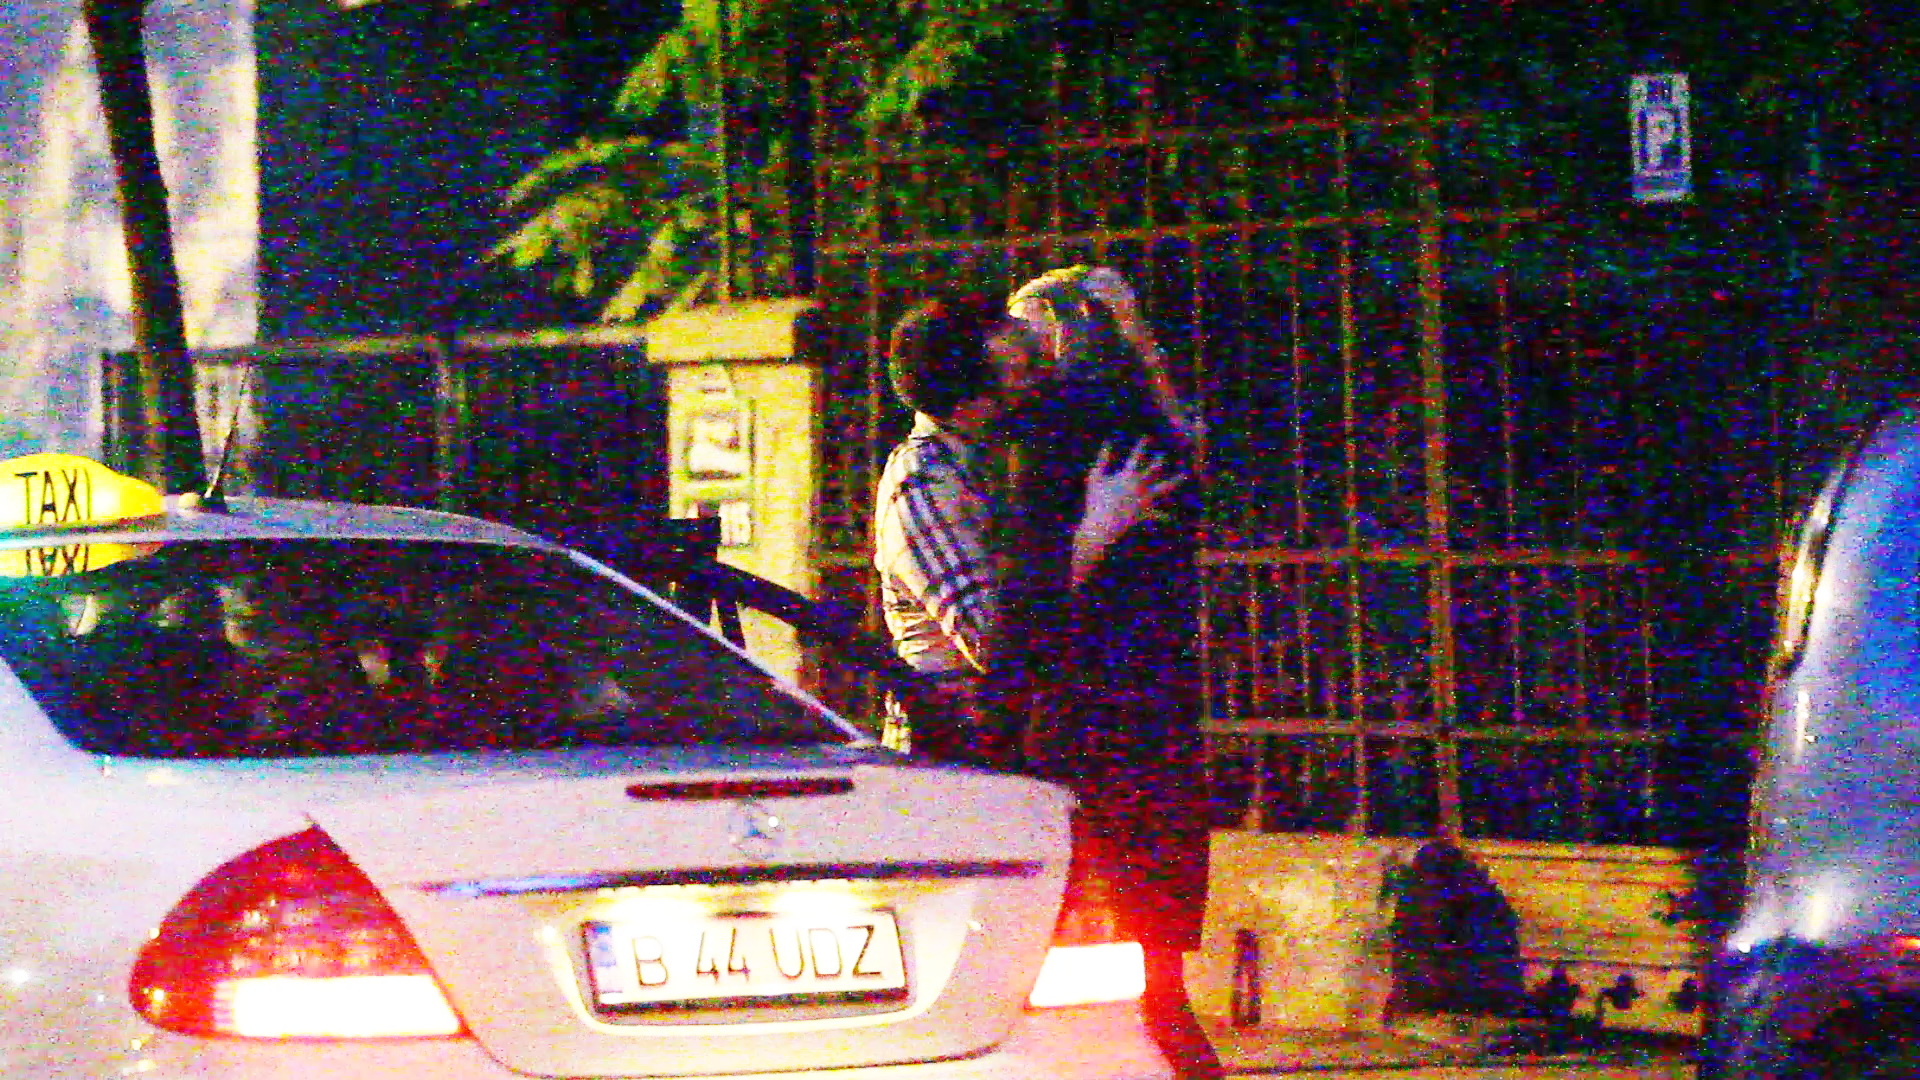 Cei doi se saruta in fata casei lui Versace